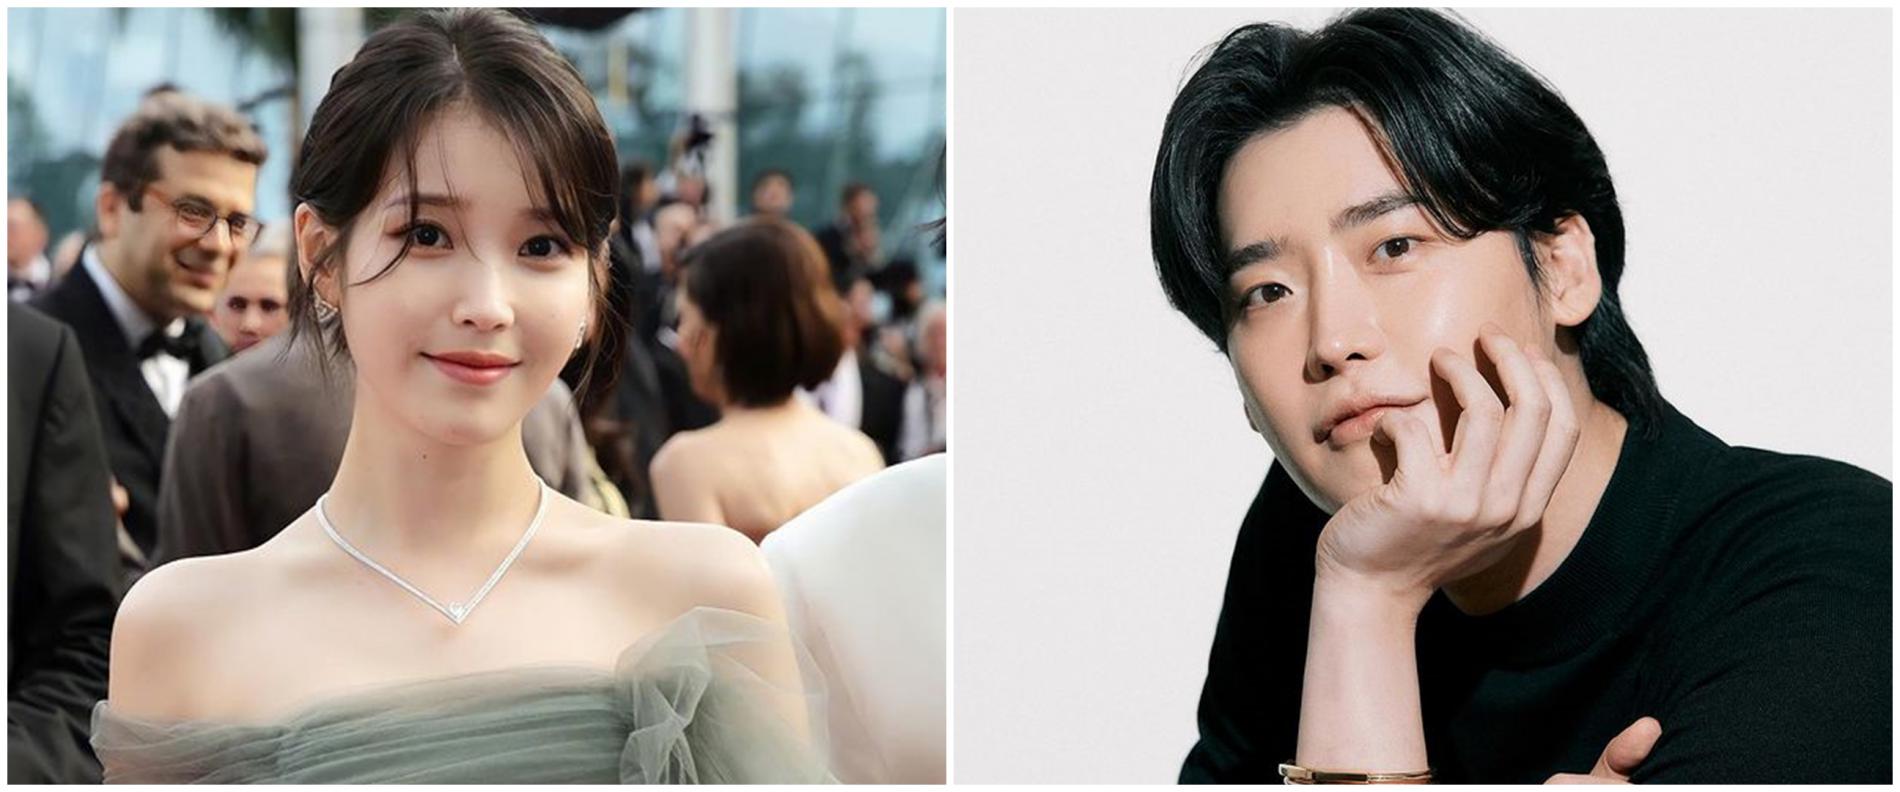 Hubungan Lee Jong Suk dan IU Dikonfirmasi oleh Agensi